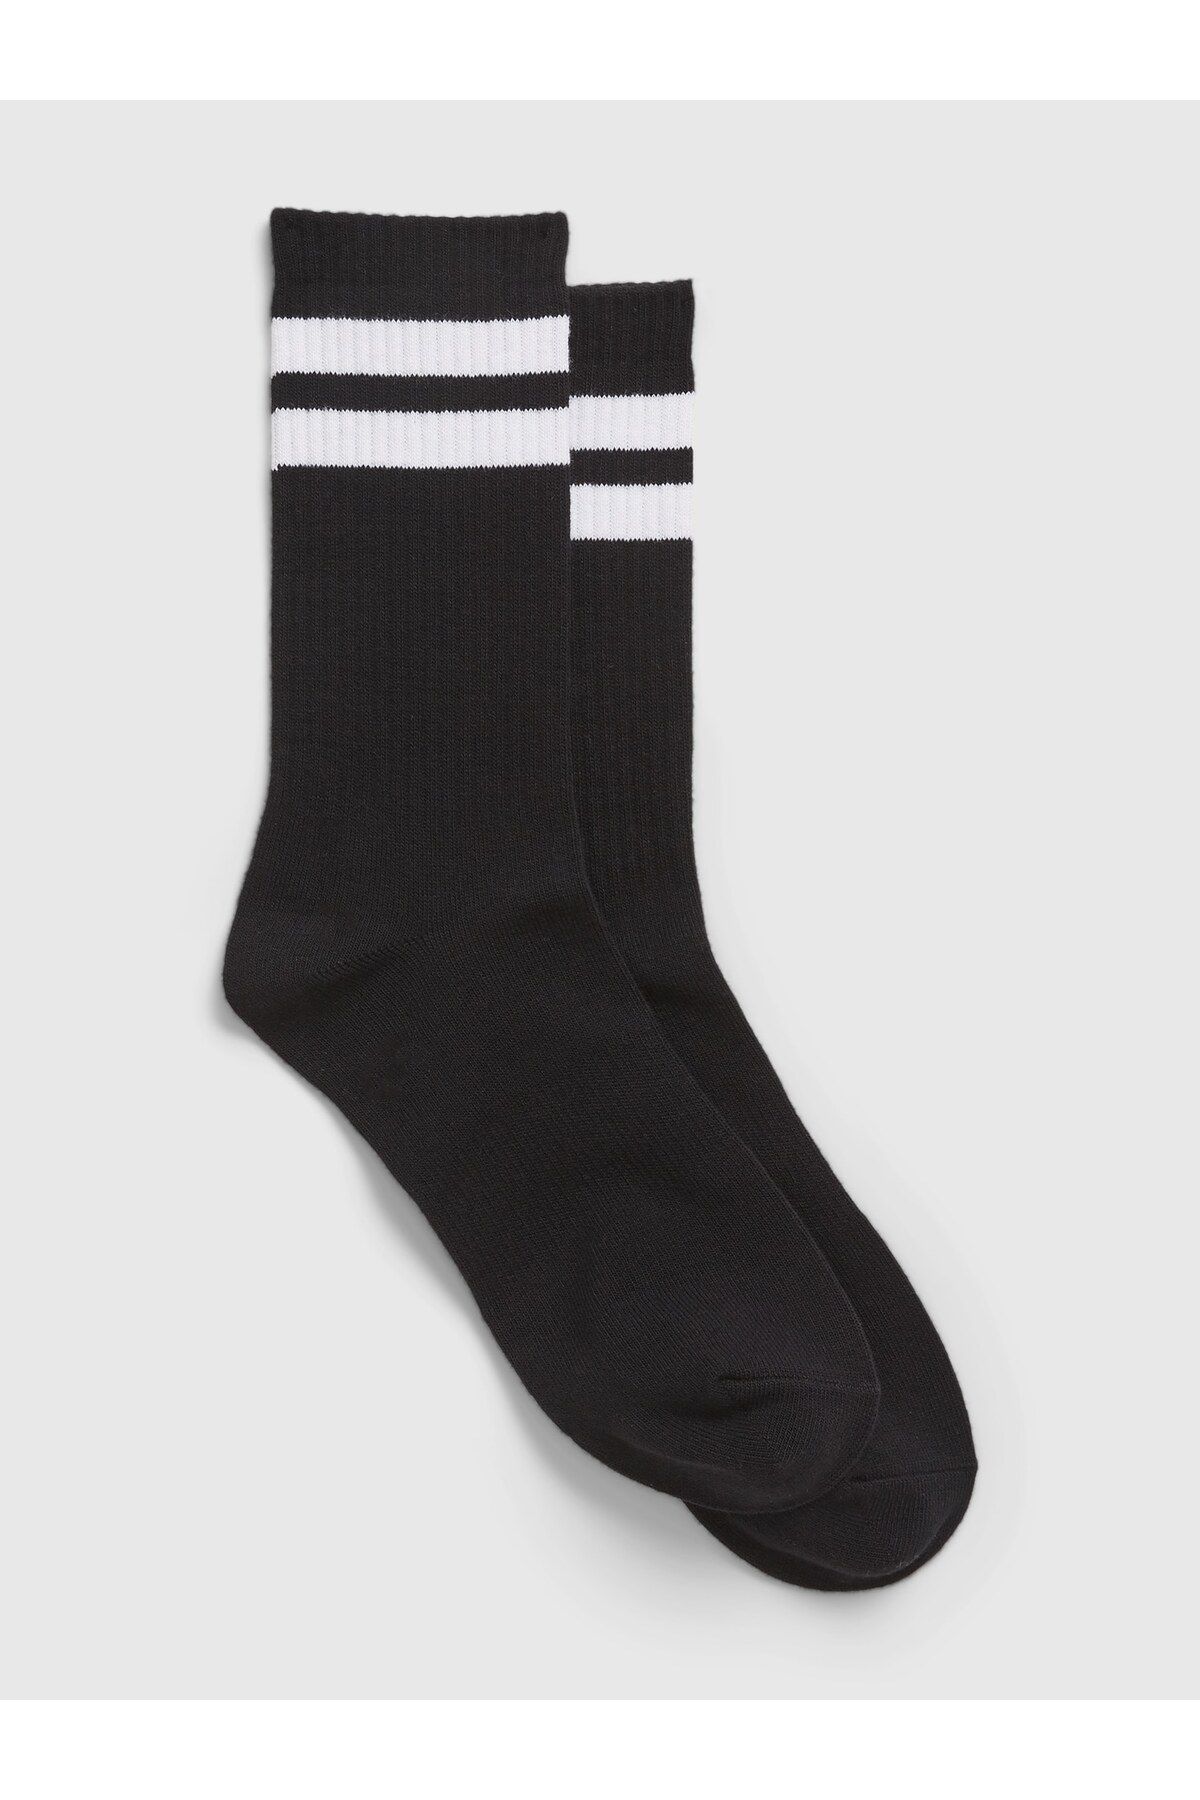 GAP Erkek Siyah Çizgi Desenli Çorap